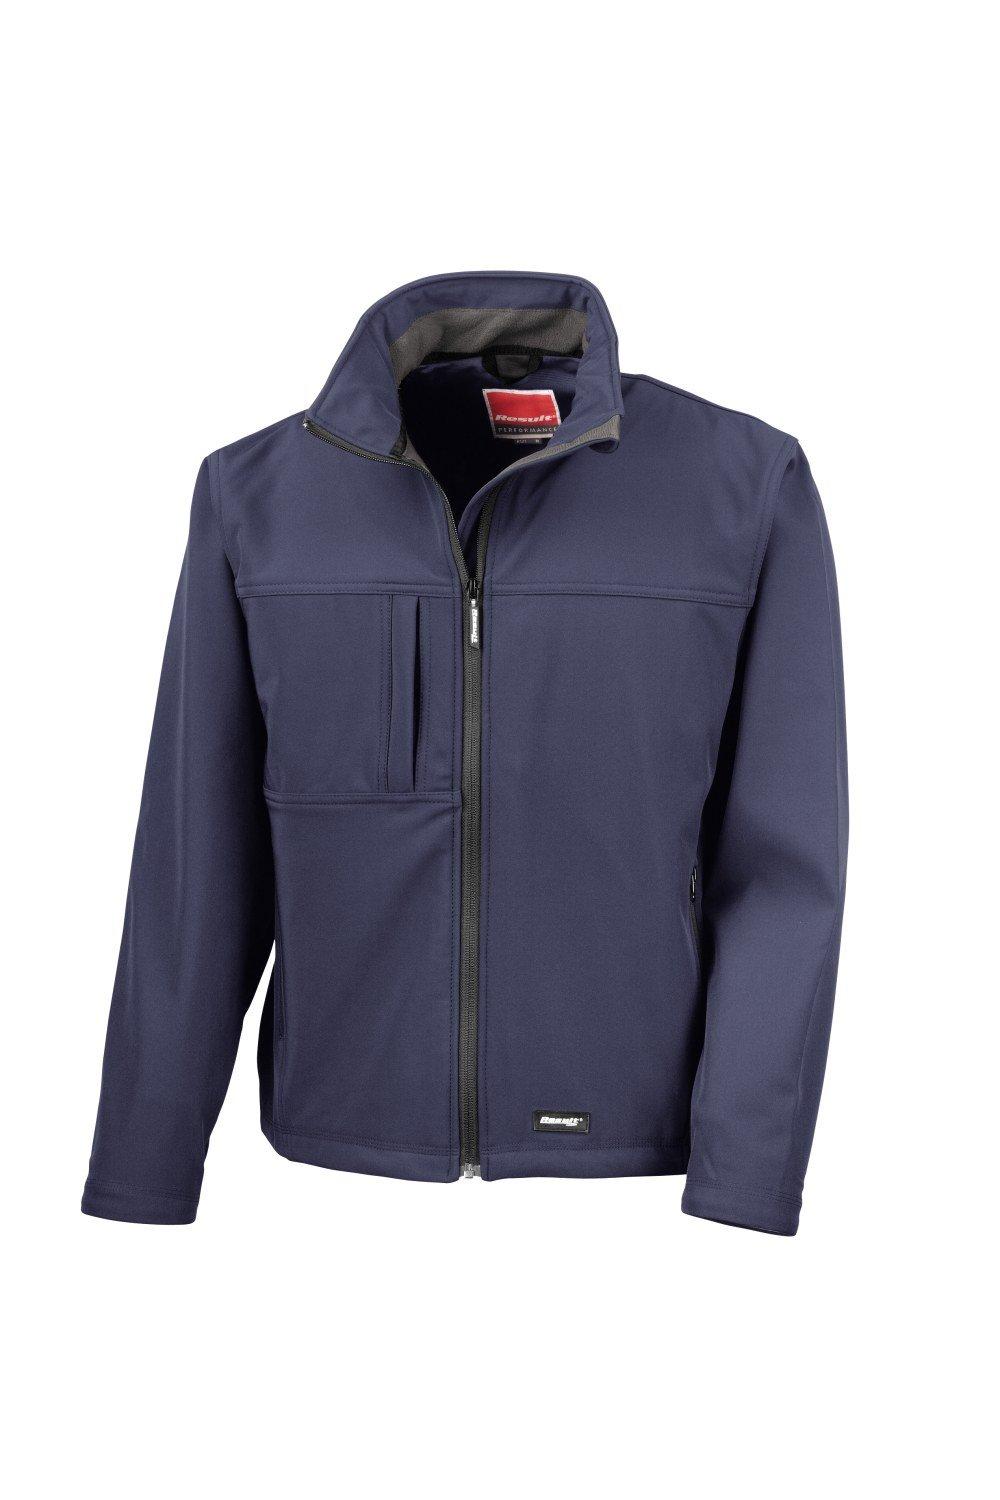 3-слойная куртка Softshell Premium (водонепроницаемая, ветрозащитная и дышащая) Result, темно-синий